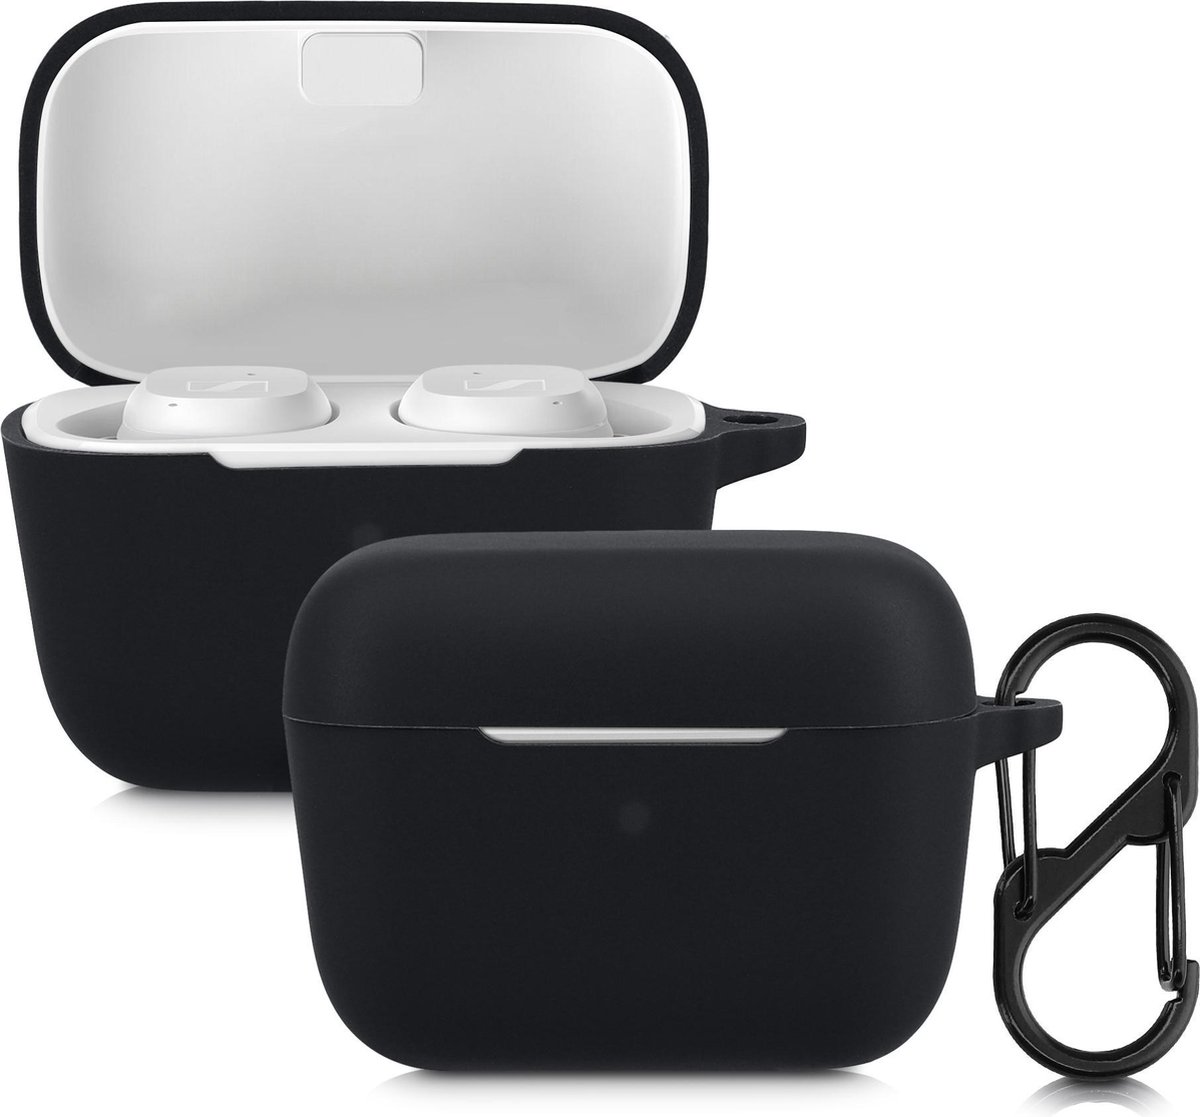 kwmobile Hoes voor Sennheiser CX True Wireless - Siliconen cover voor oordopjes in zwart